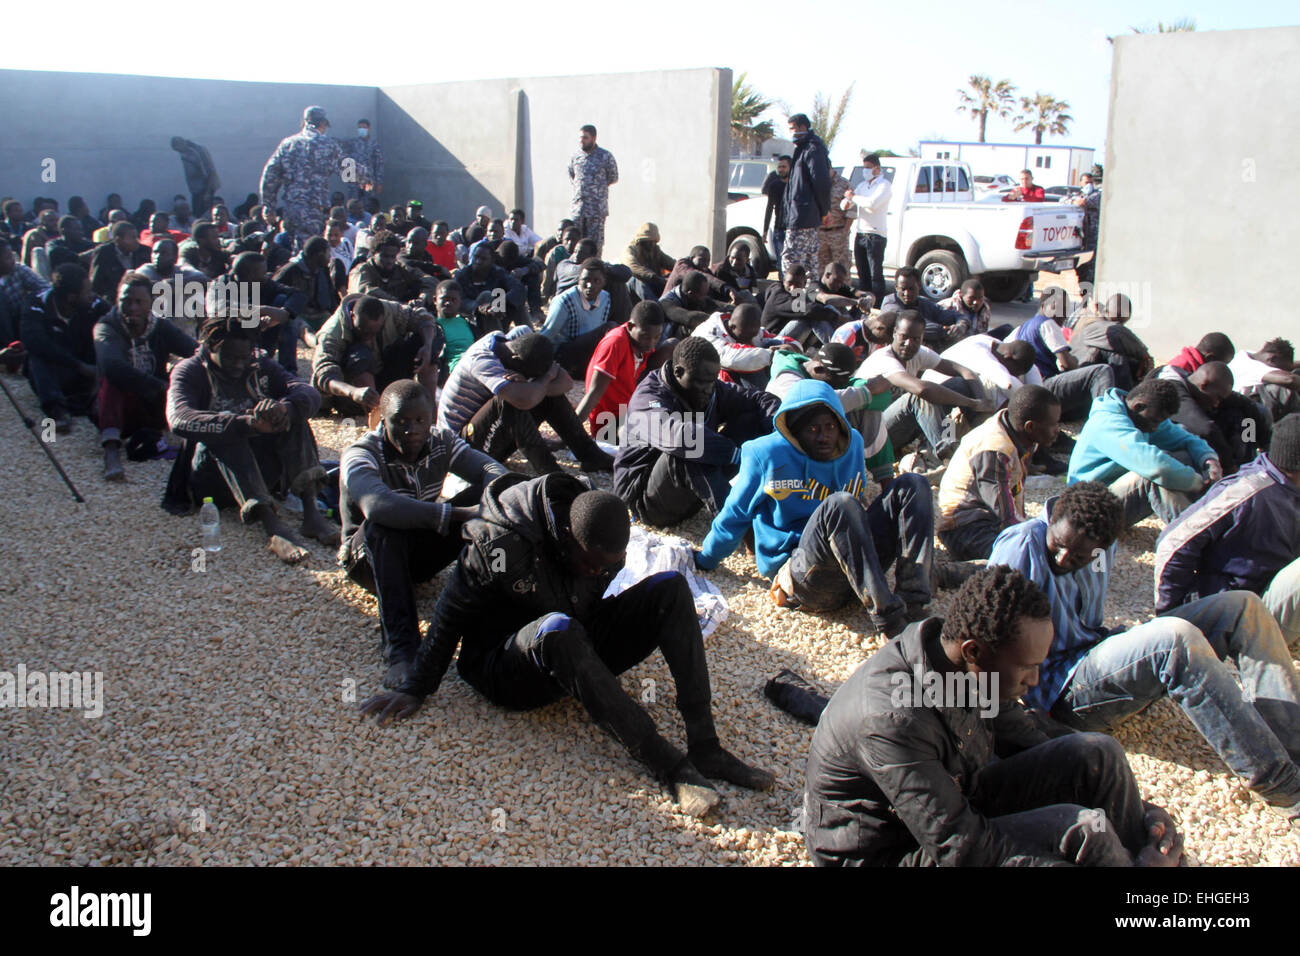 (150313)--Tripolis, März 13, 2015(Xinhua)--illegale Einwanderer sitzen in einem Hof, bewacht von der libyschen Polizei in Tripolis, Libyen, am 13. März 2015. Libyen ist seit langem ein Durchgangsort für Migranten, die darauf abzielen, Malta, Italien und anderswo in Europa zu erreichen. (Xinhua/Hamza-Türkei) Stockfoto